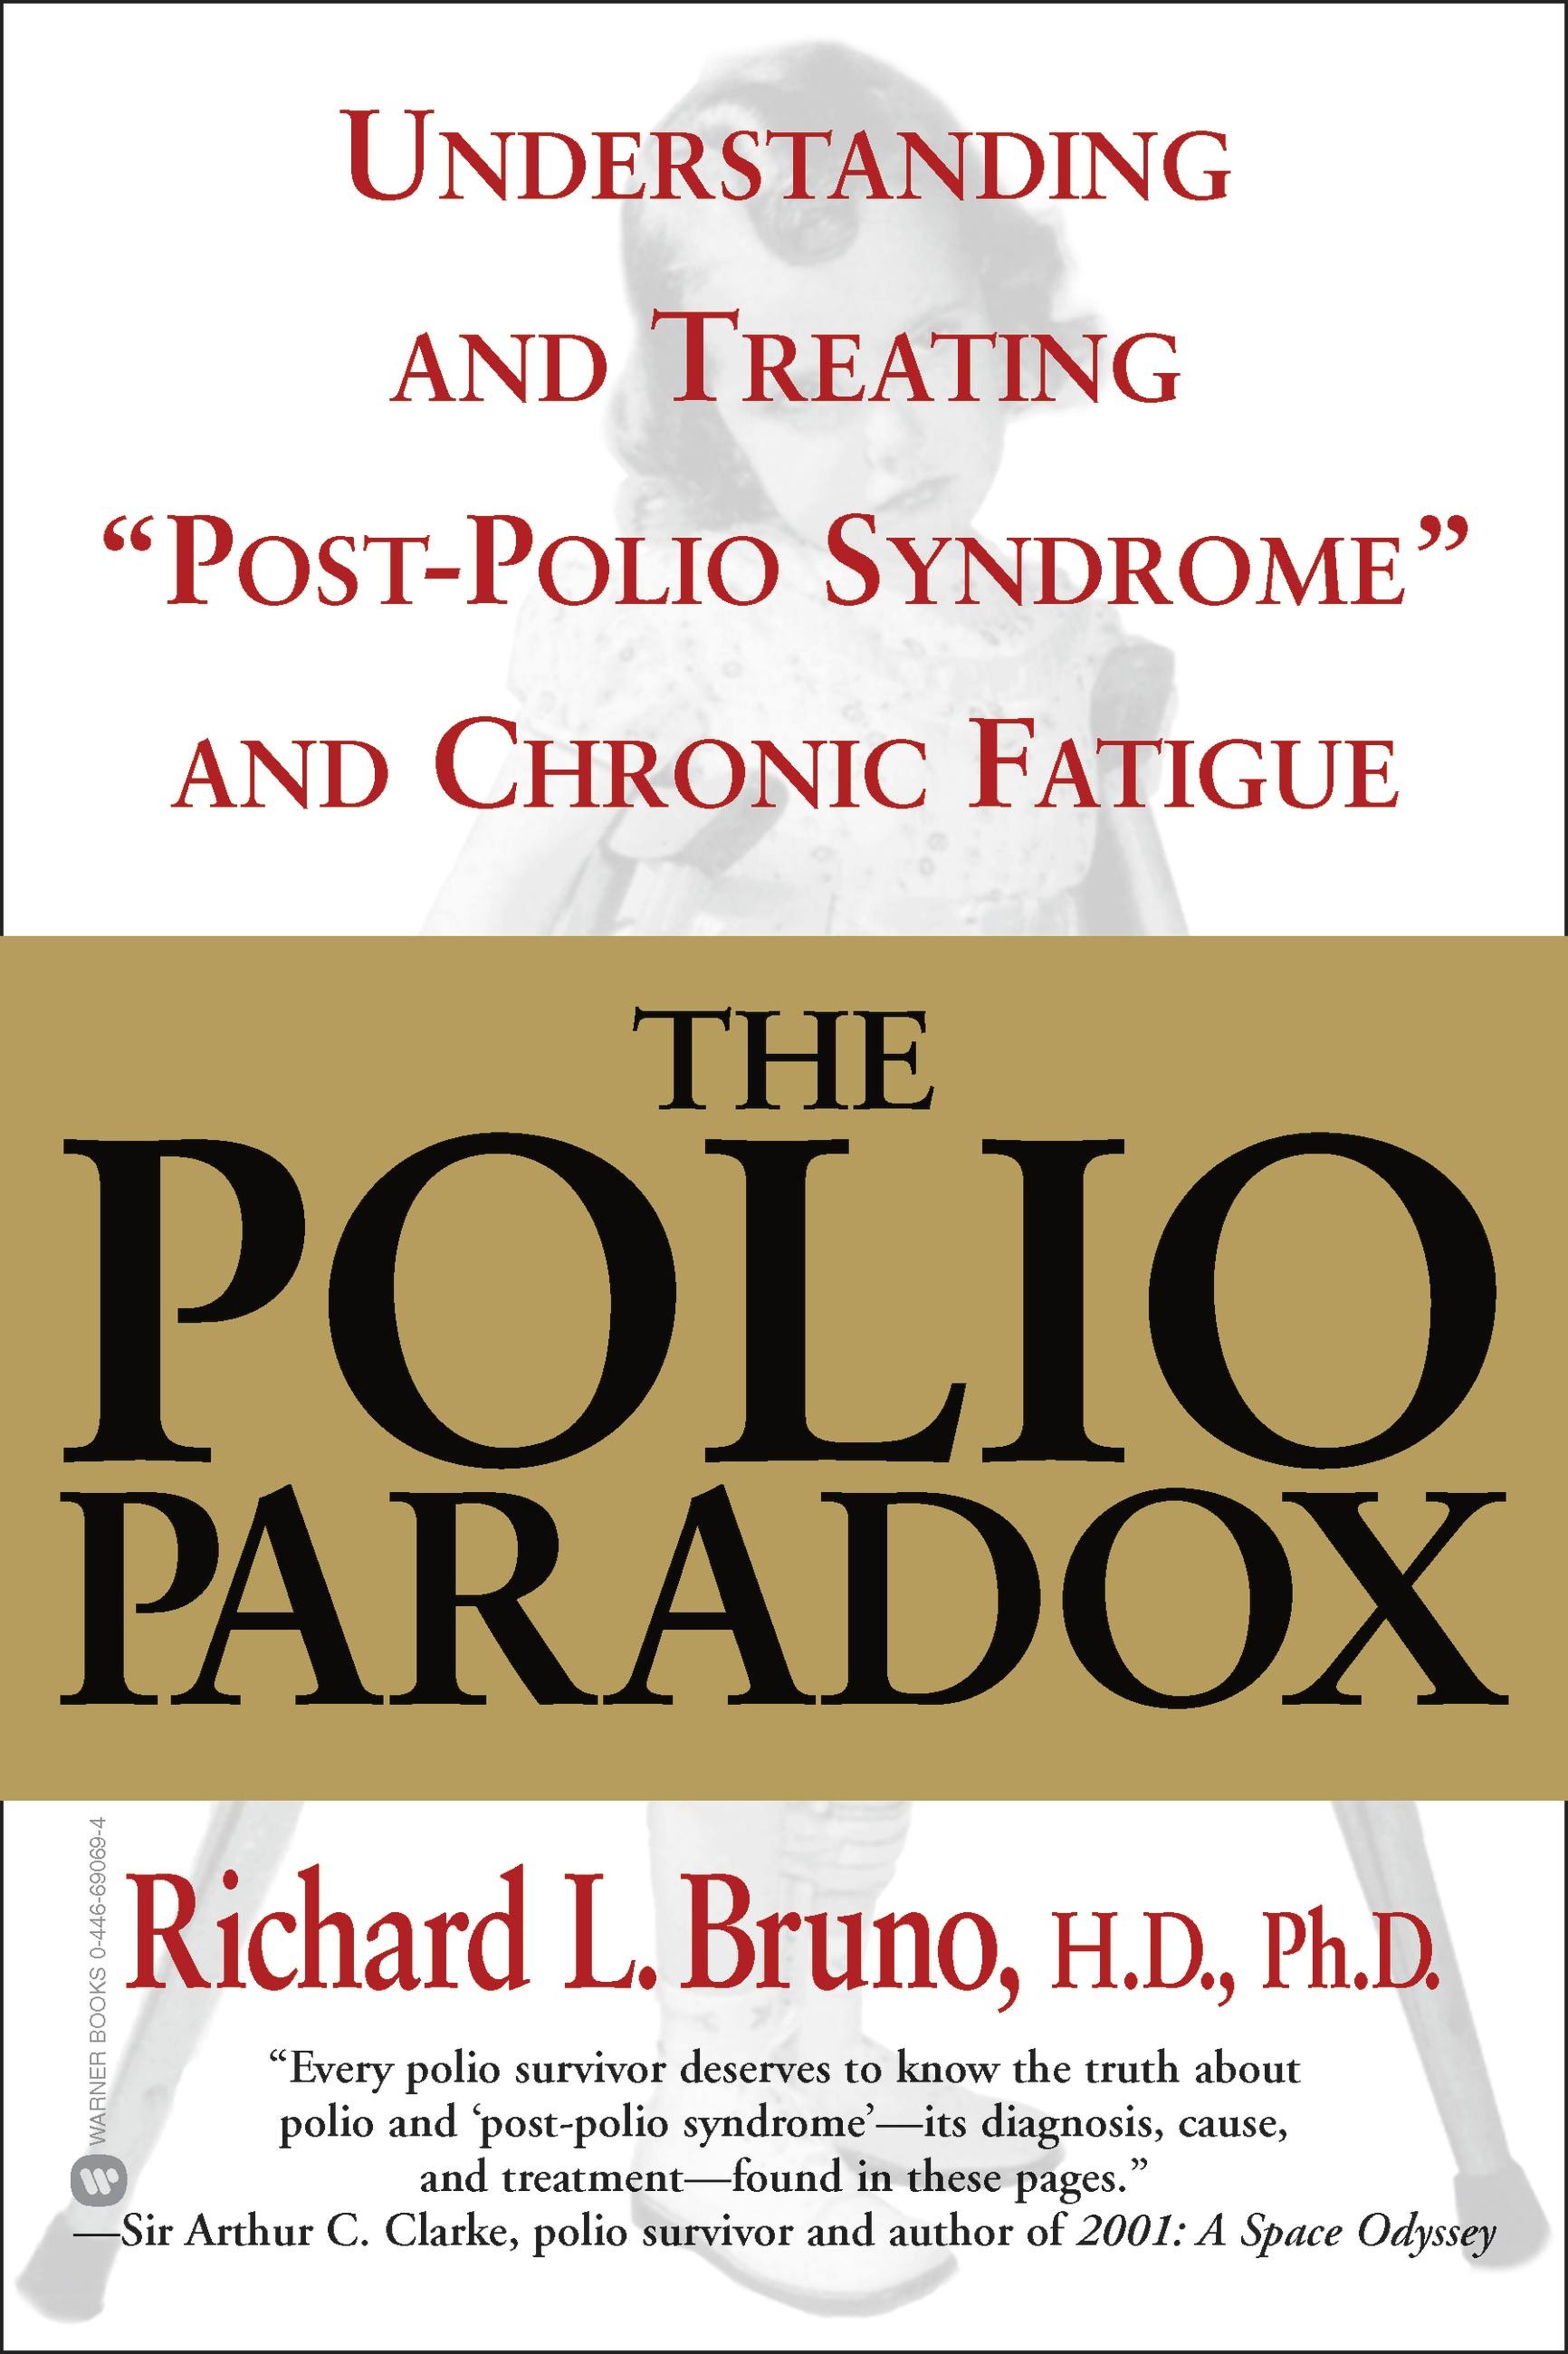 Mia Farrow says it's past time to end polio 